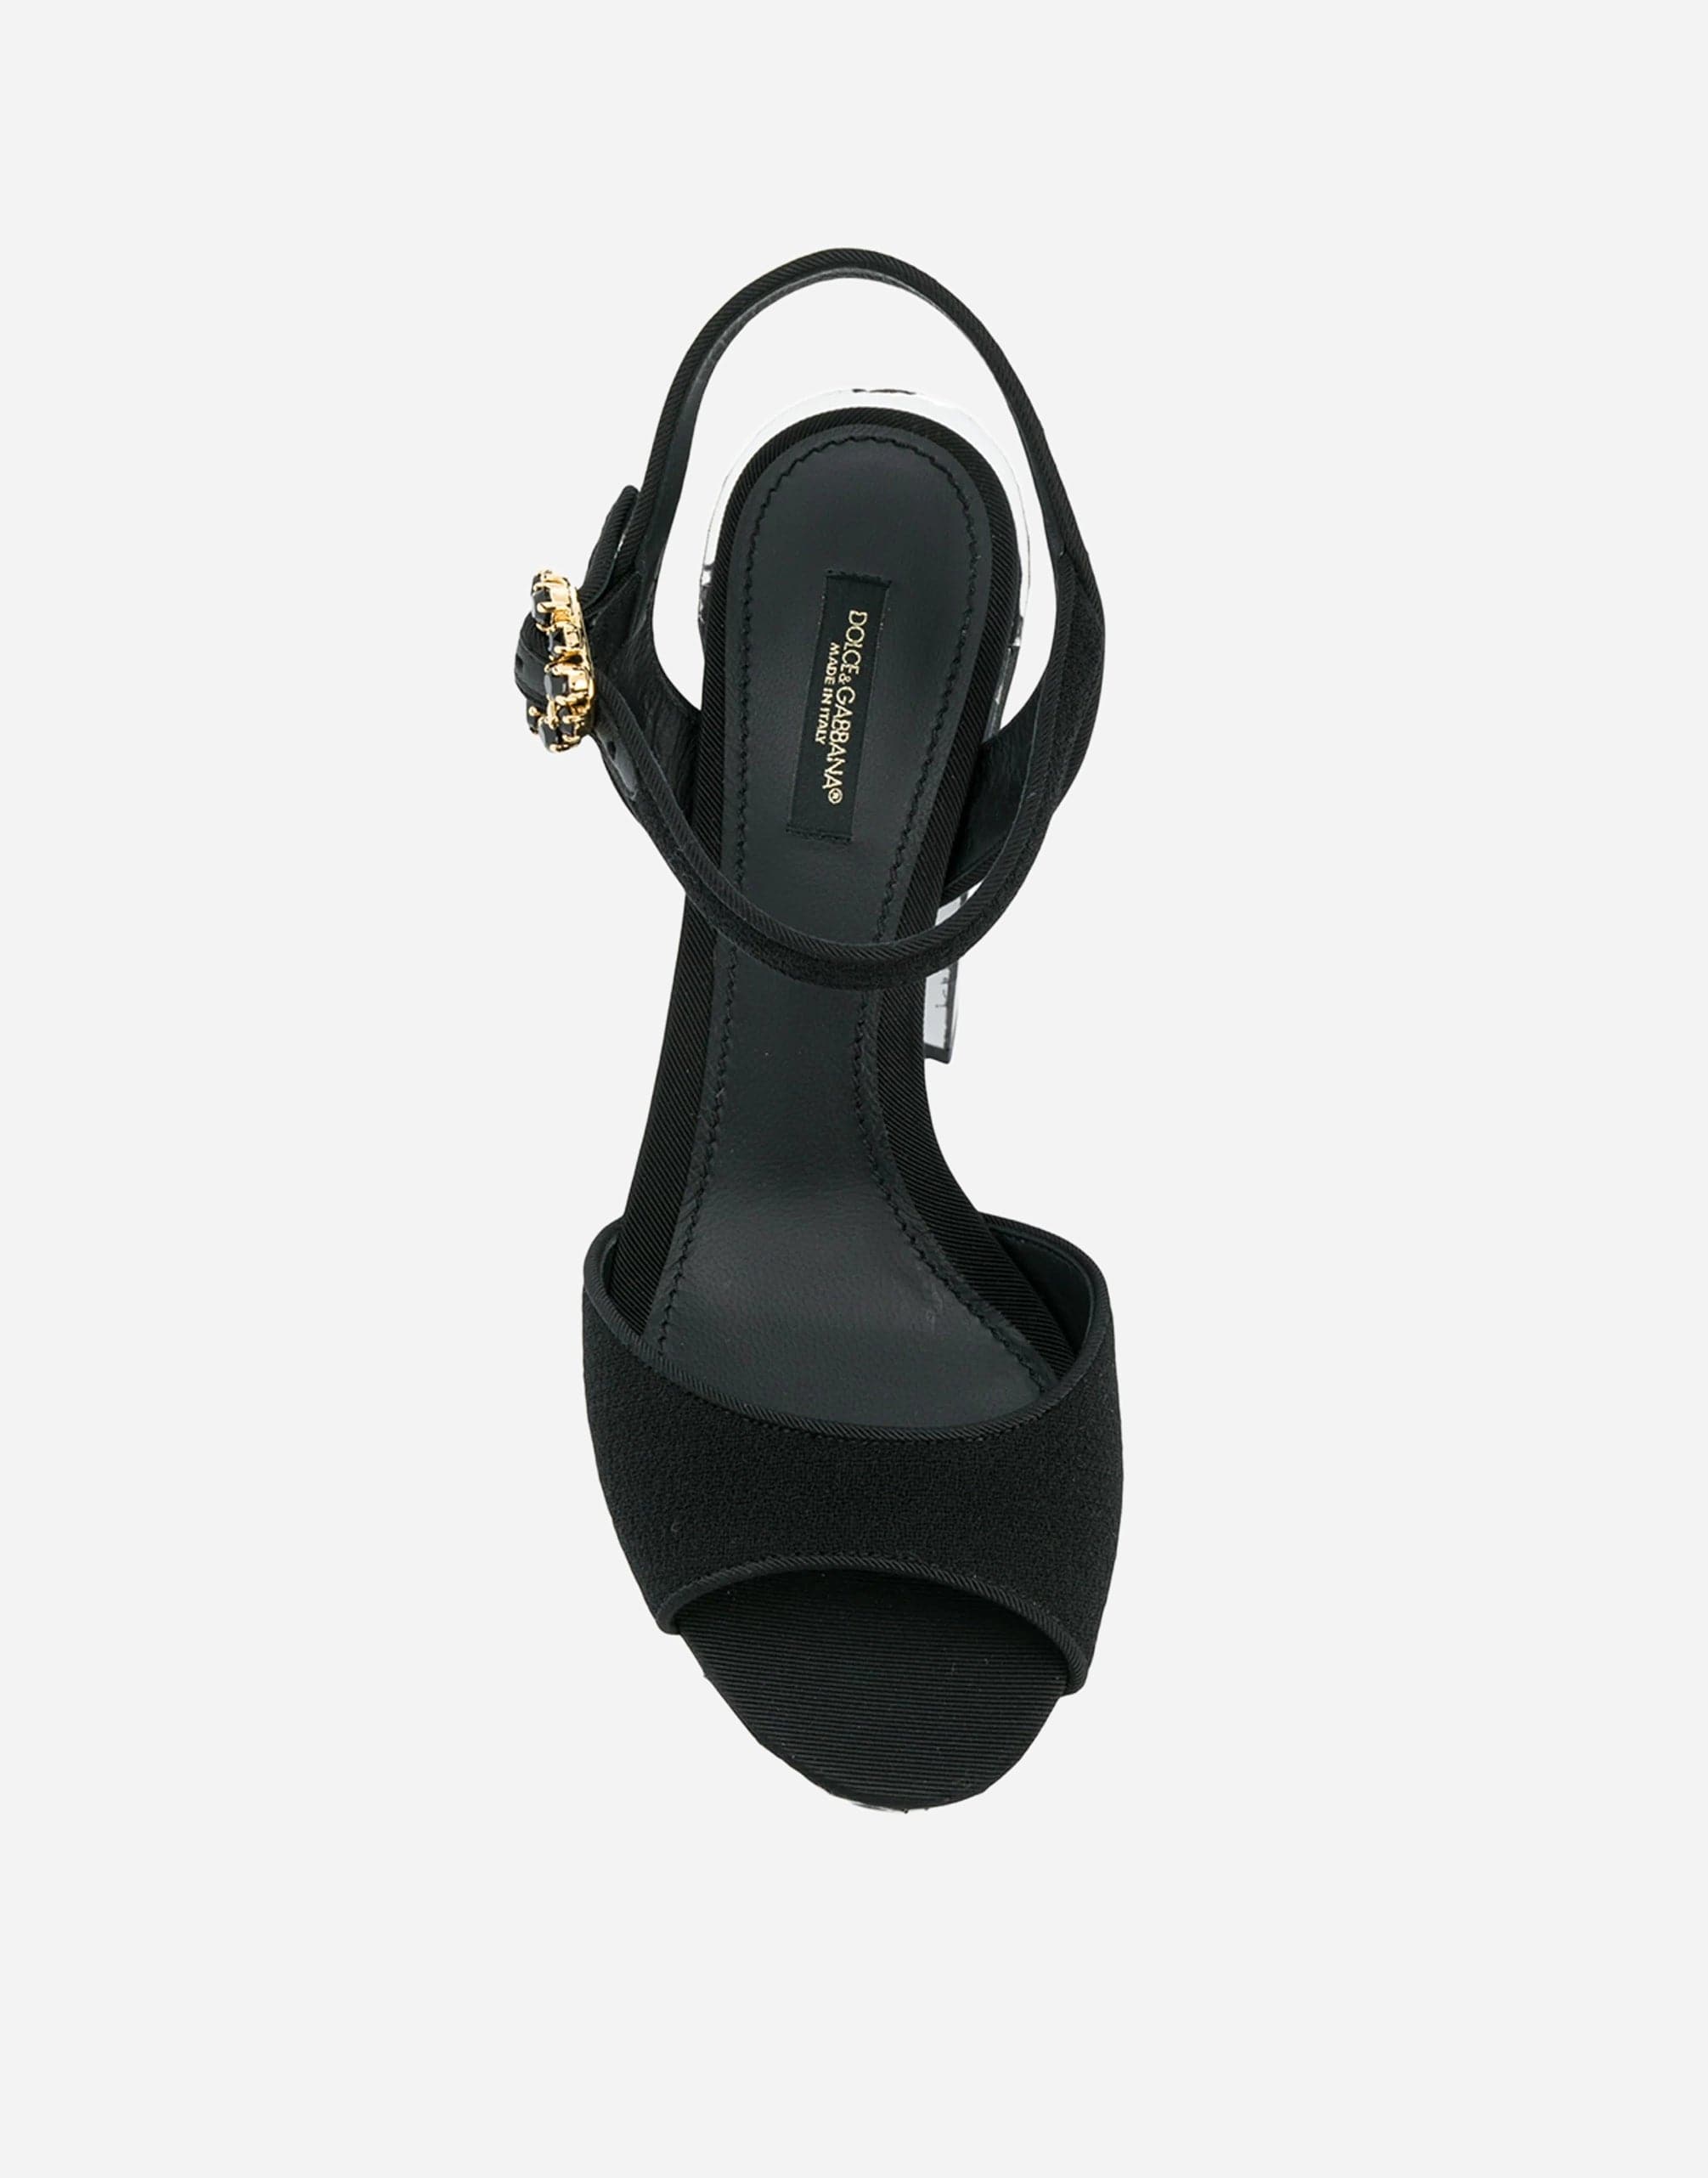 Dolce & Gabbana Belluci 120 Mirror Platform Suede Sandals